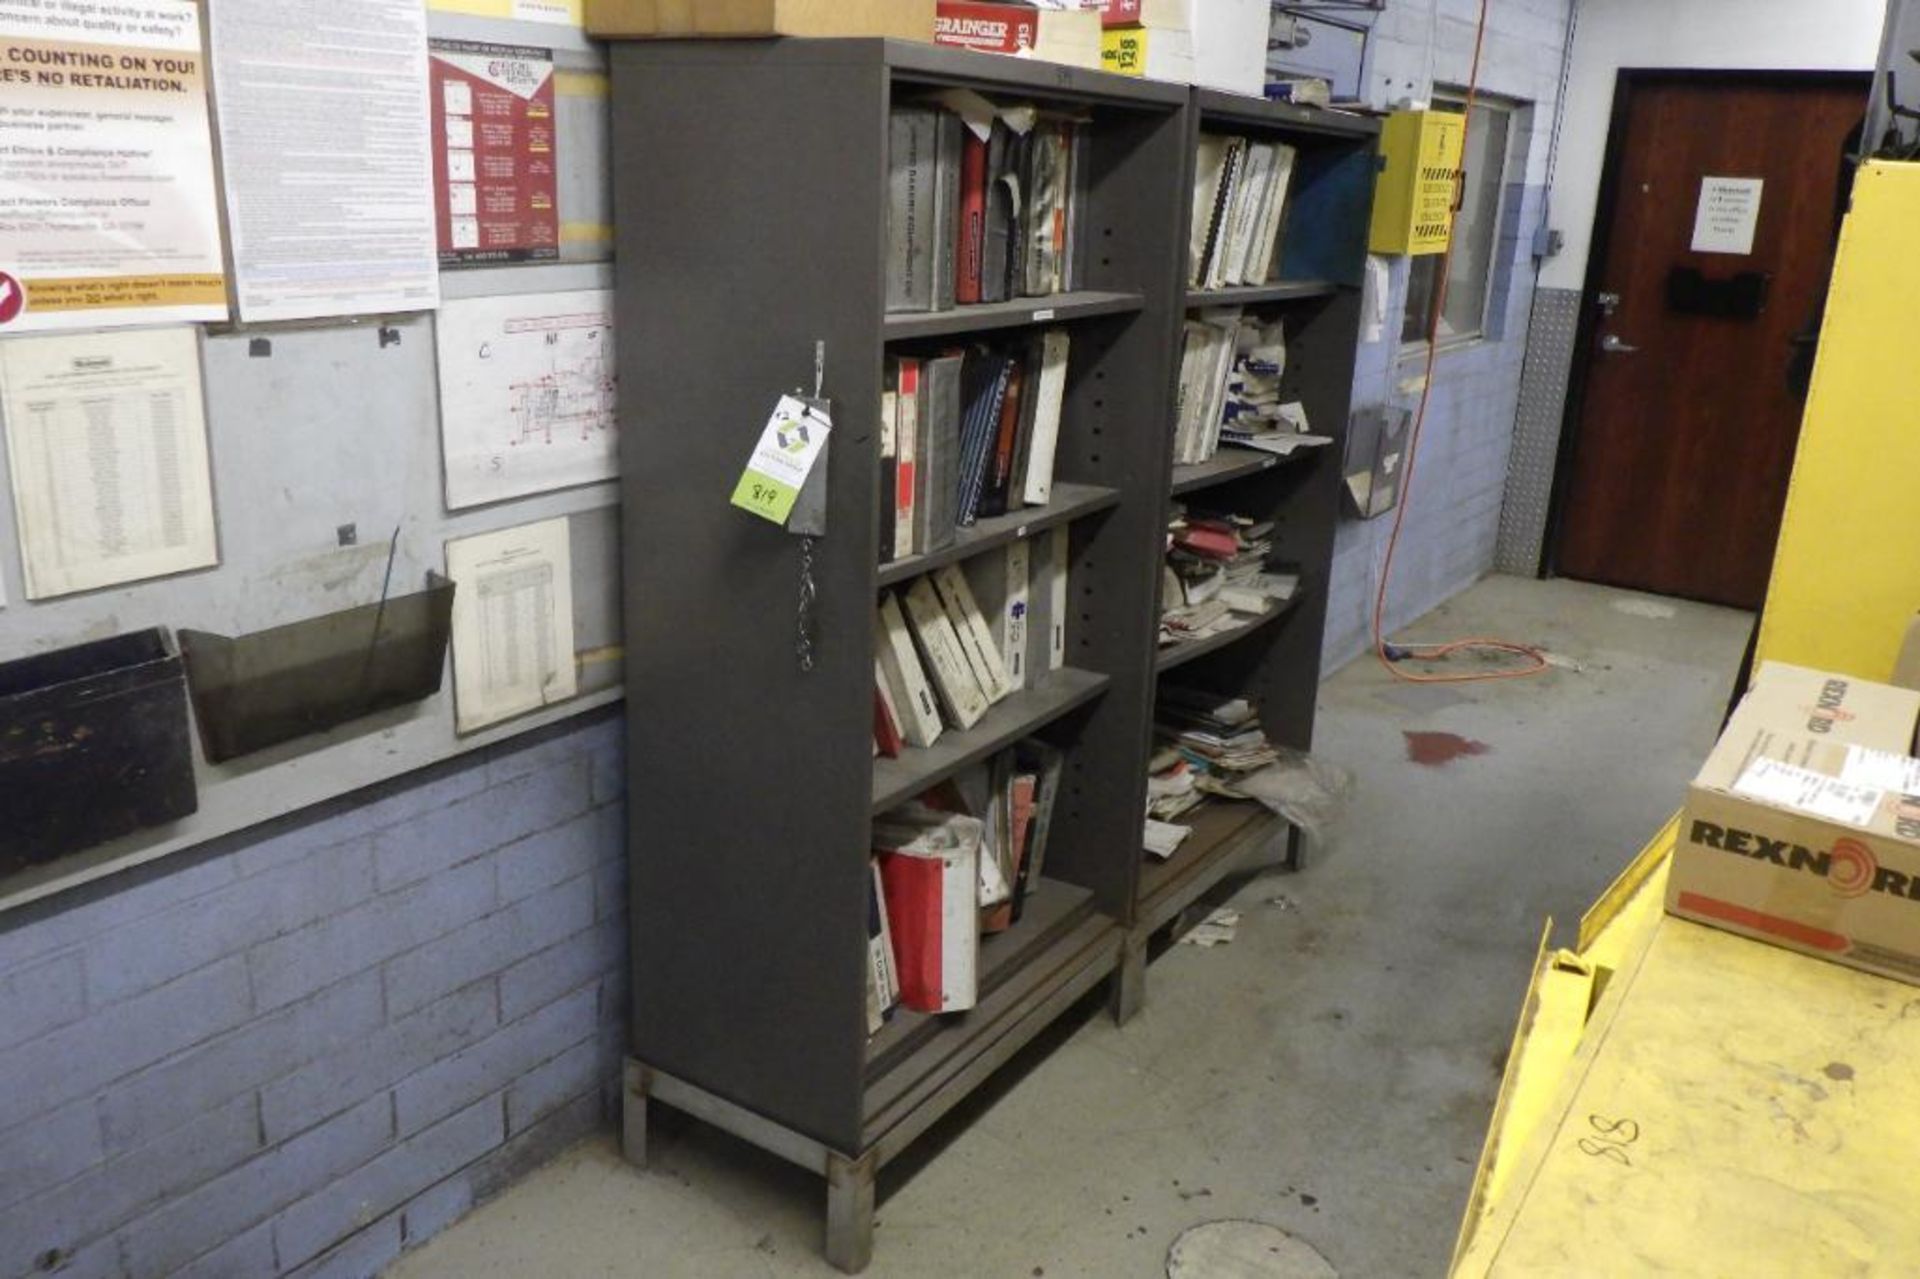 (2) mild steel shelves